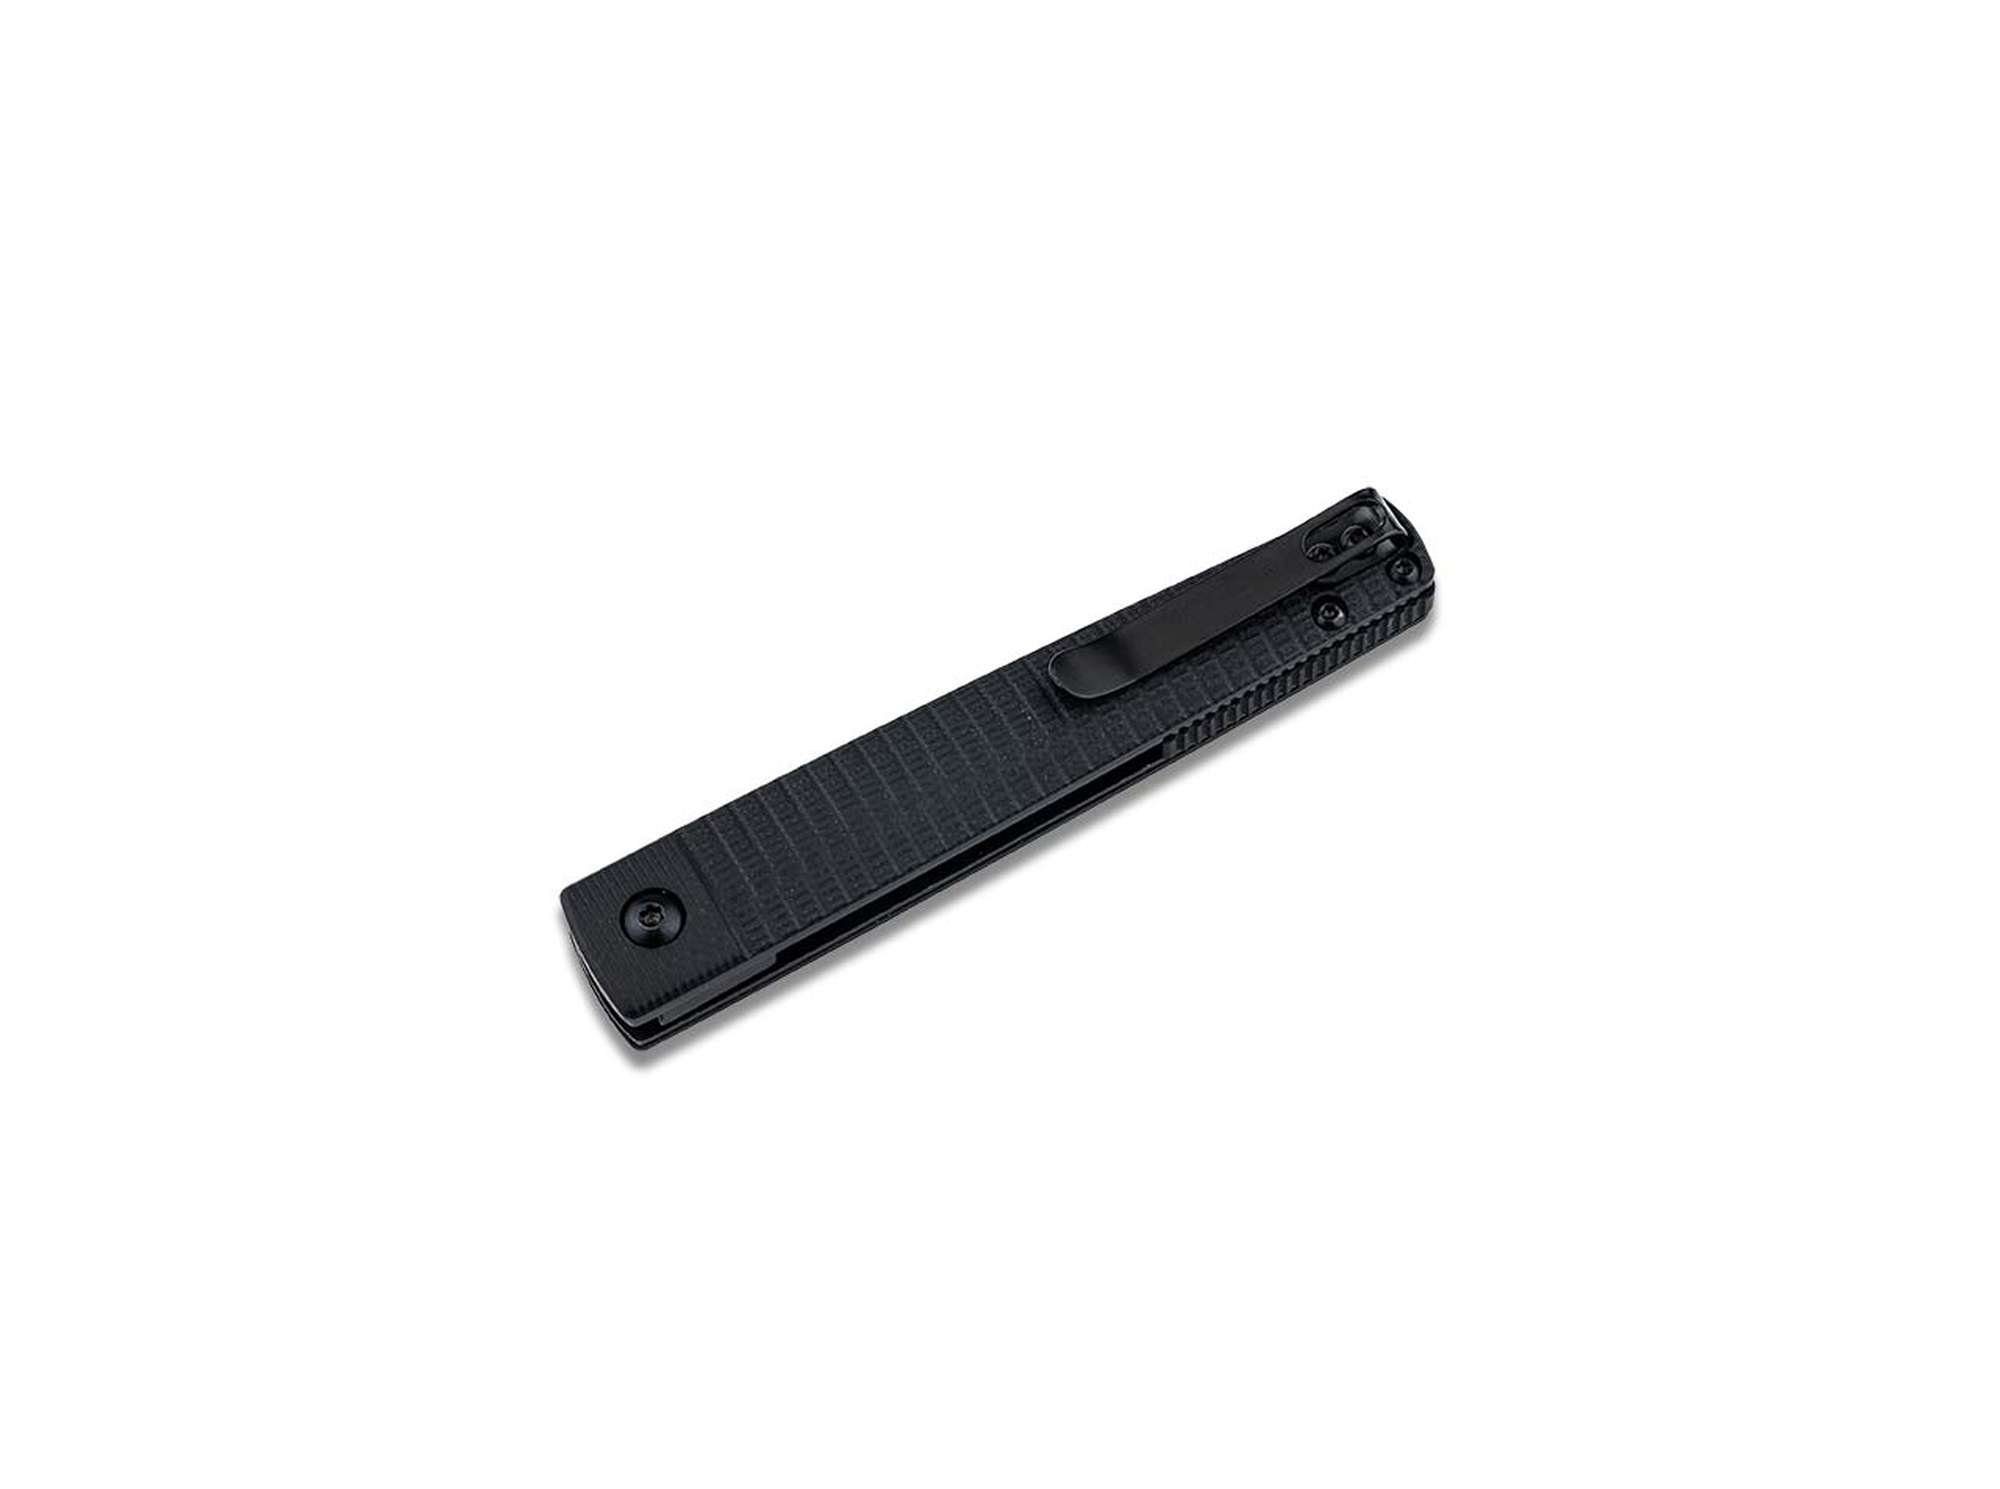 Liner MAGNUM Griff Taschenmesser Clip by G10 Stereo BÖKER Einhandmesser Lock